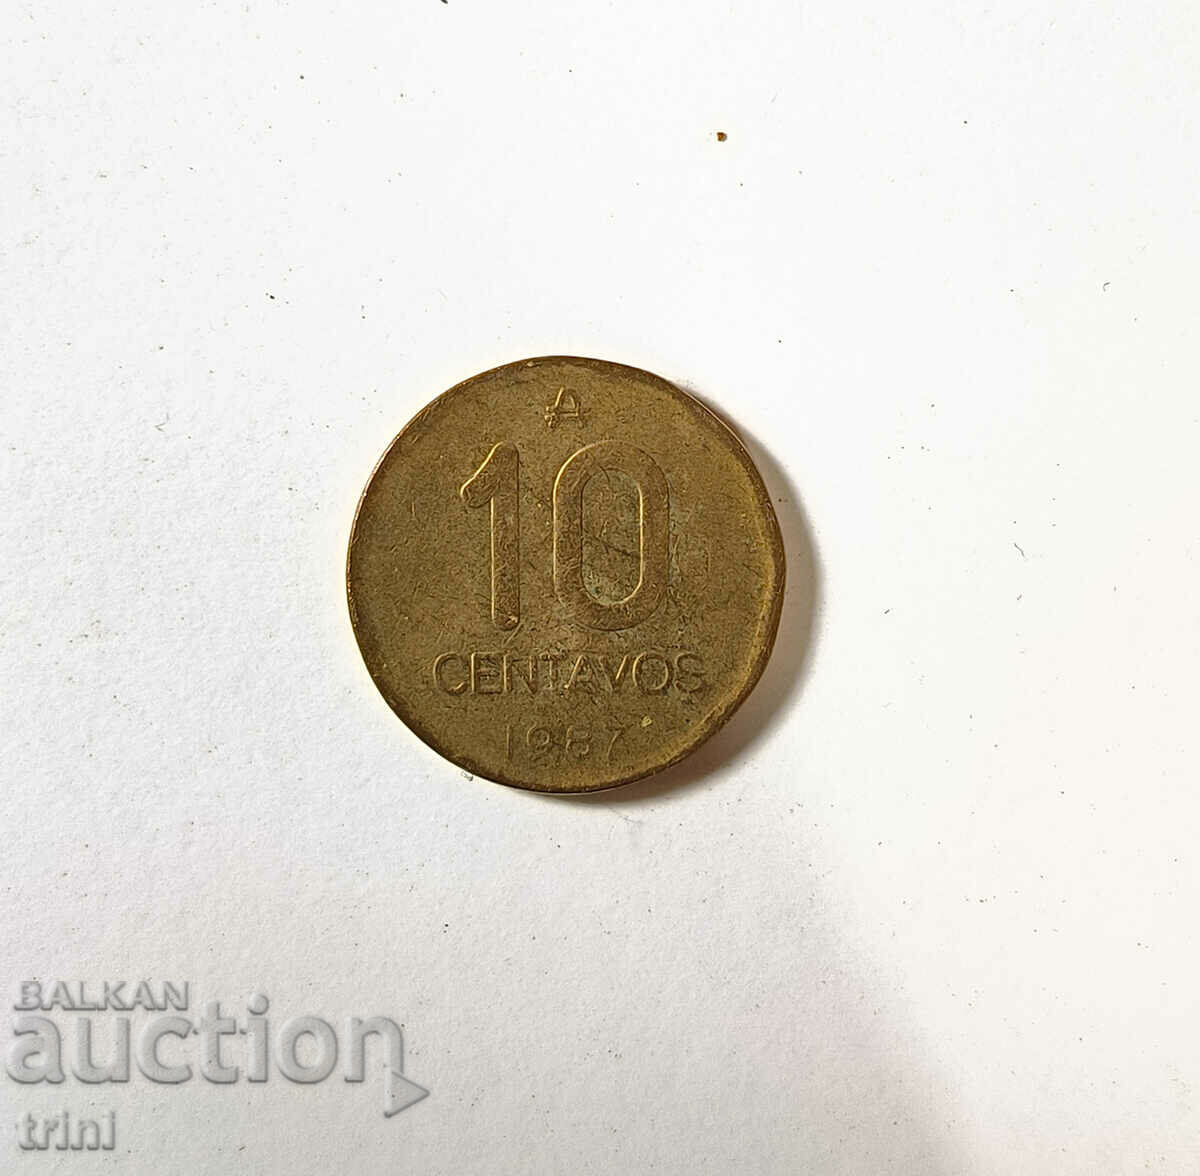 Argentina 10 centavos 1987 year s40